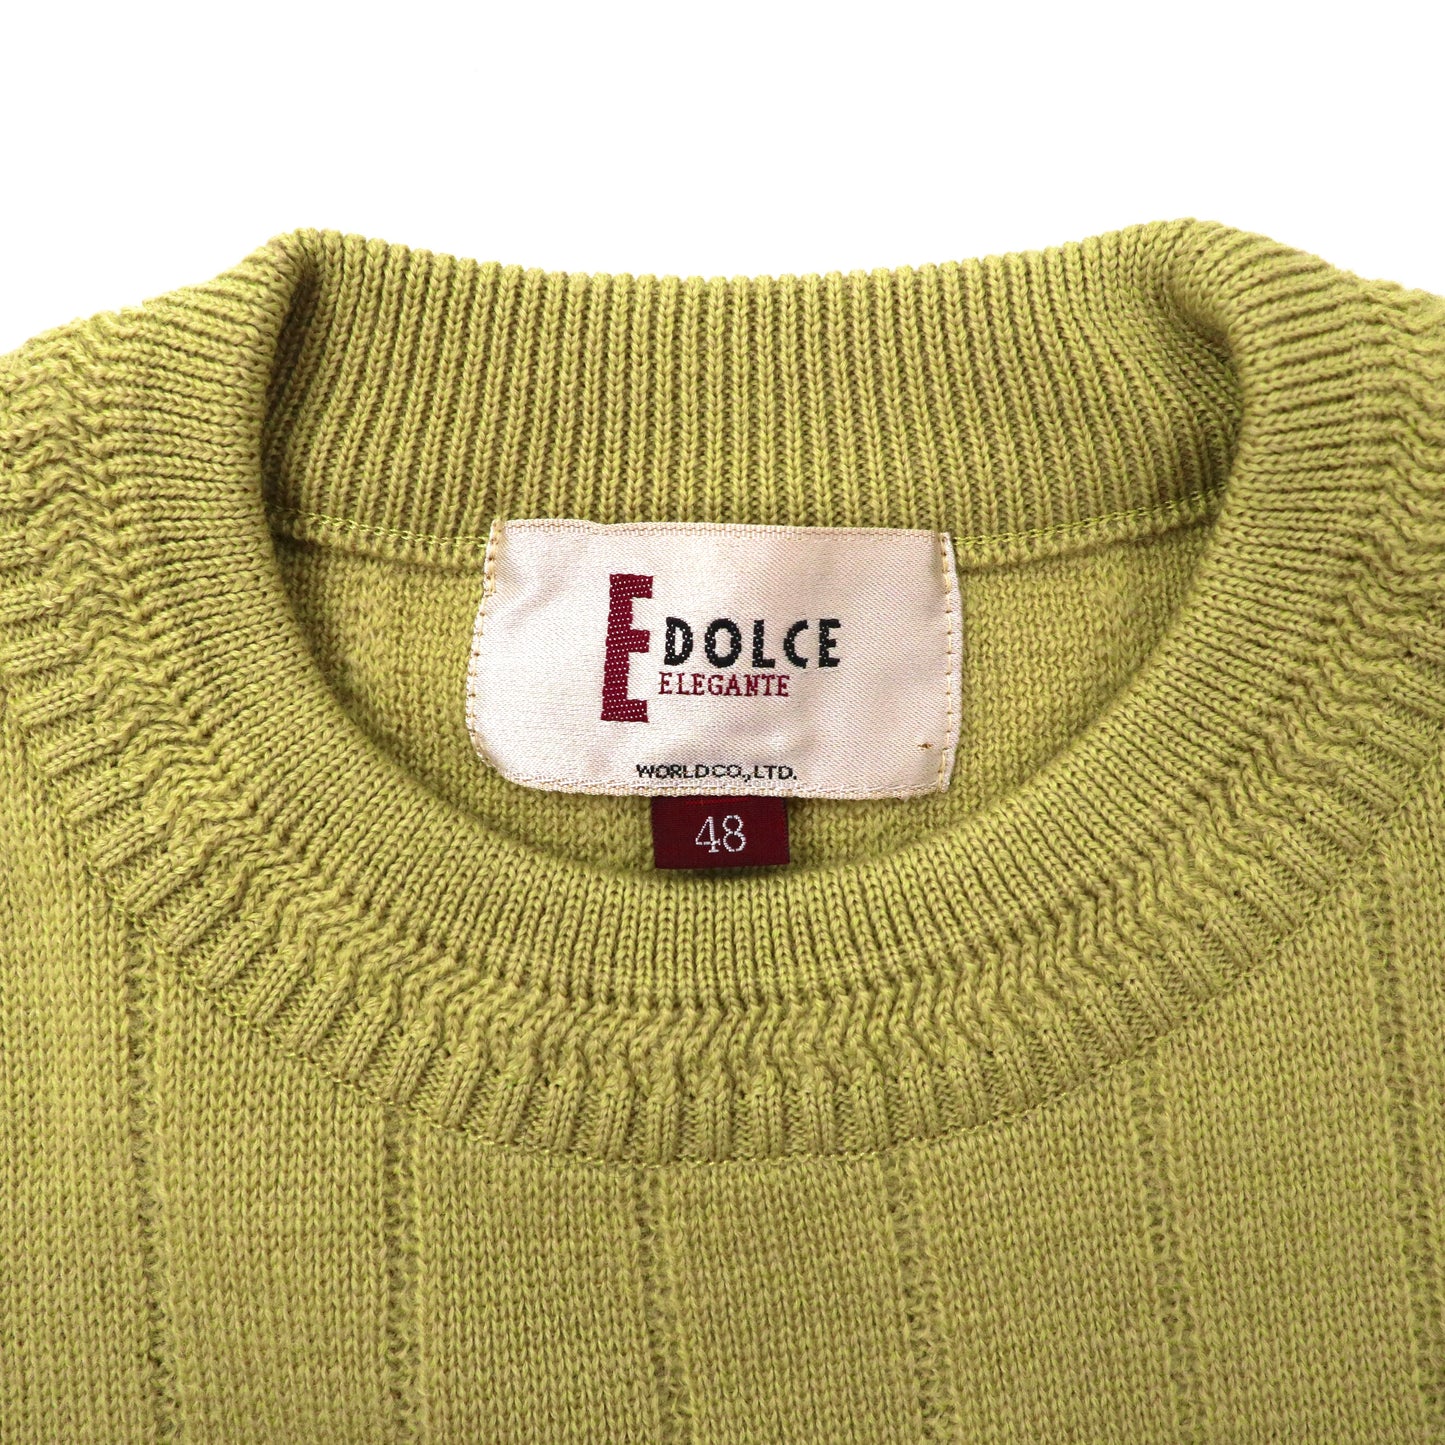 DOLCE ニット セーター 48 グリーン ウール 80年代 日本製